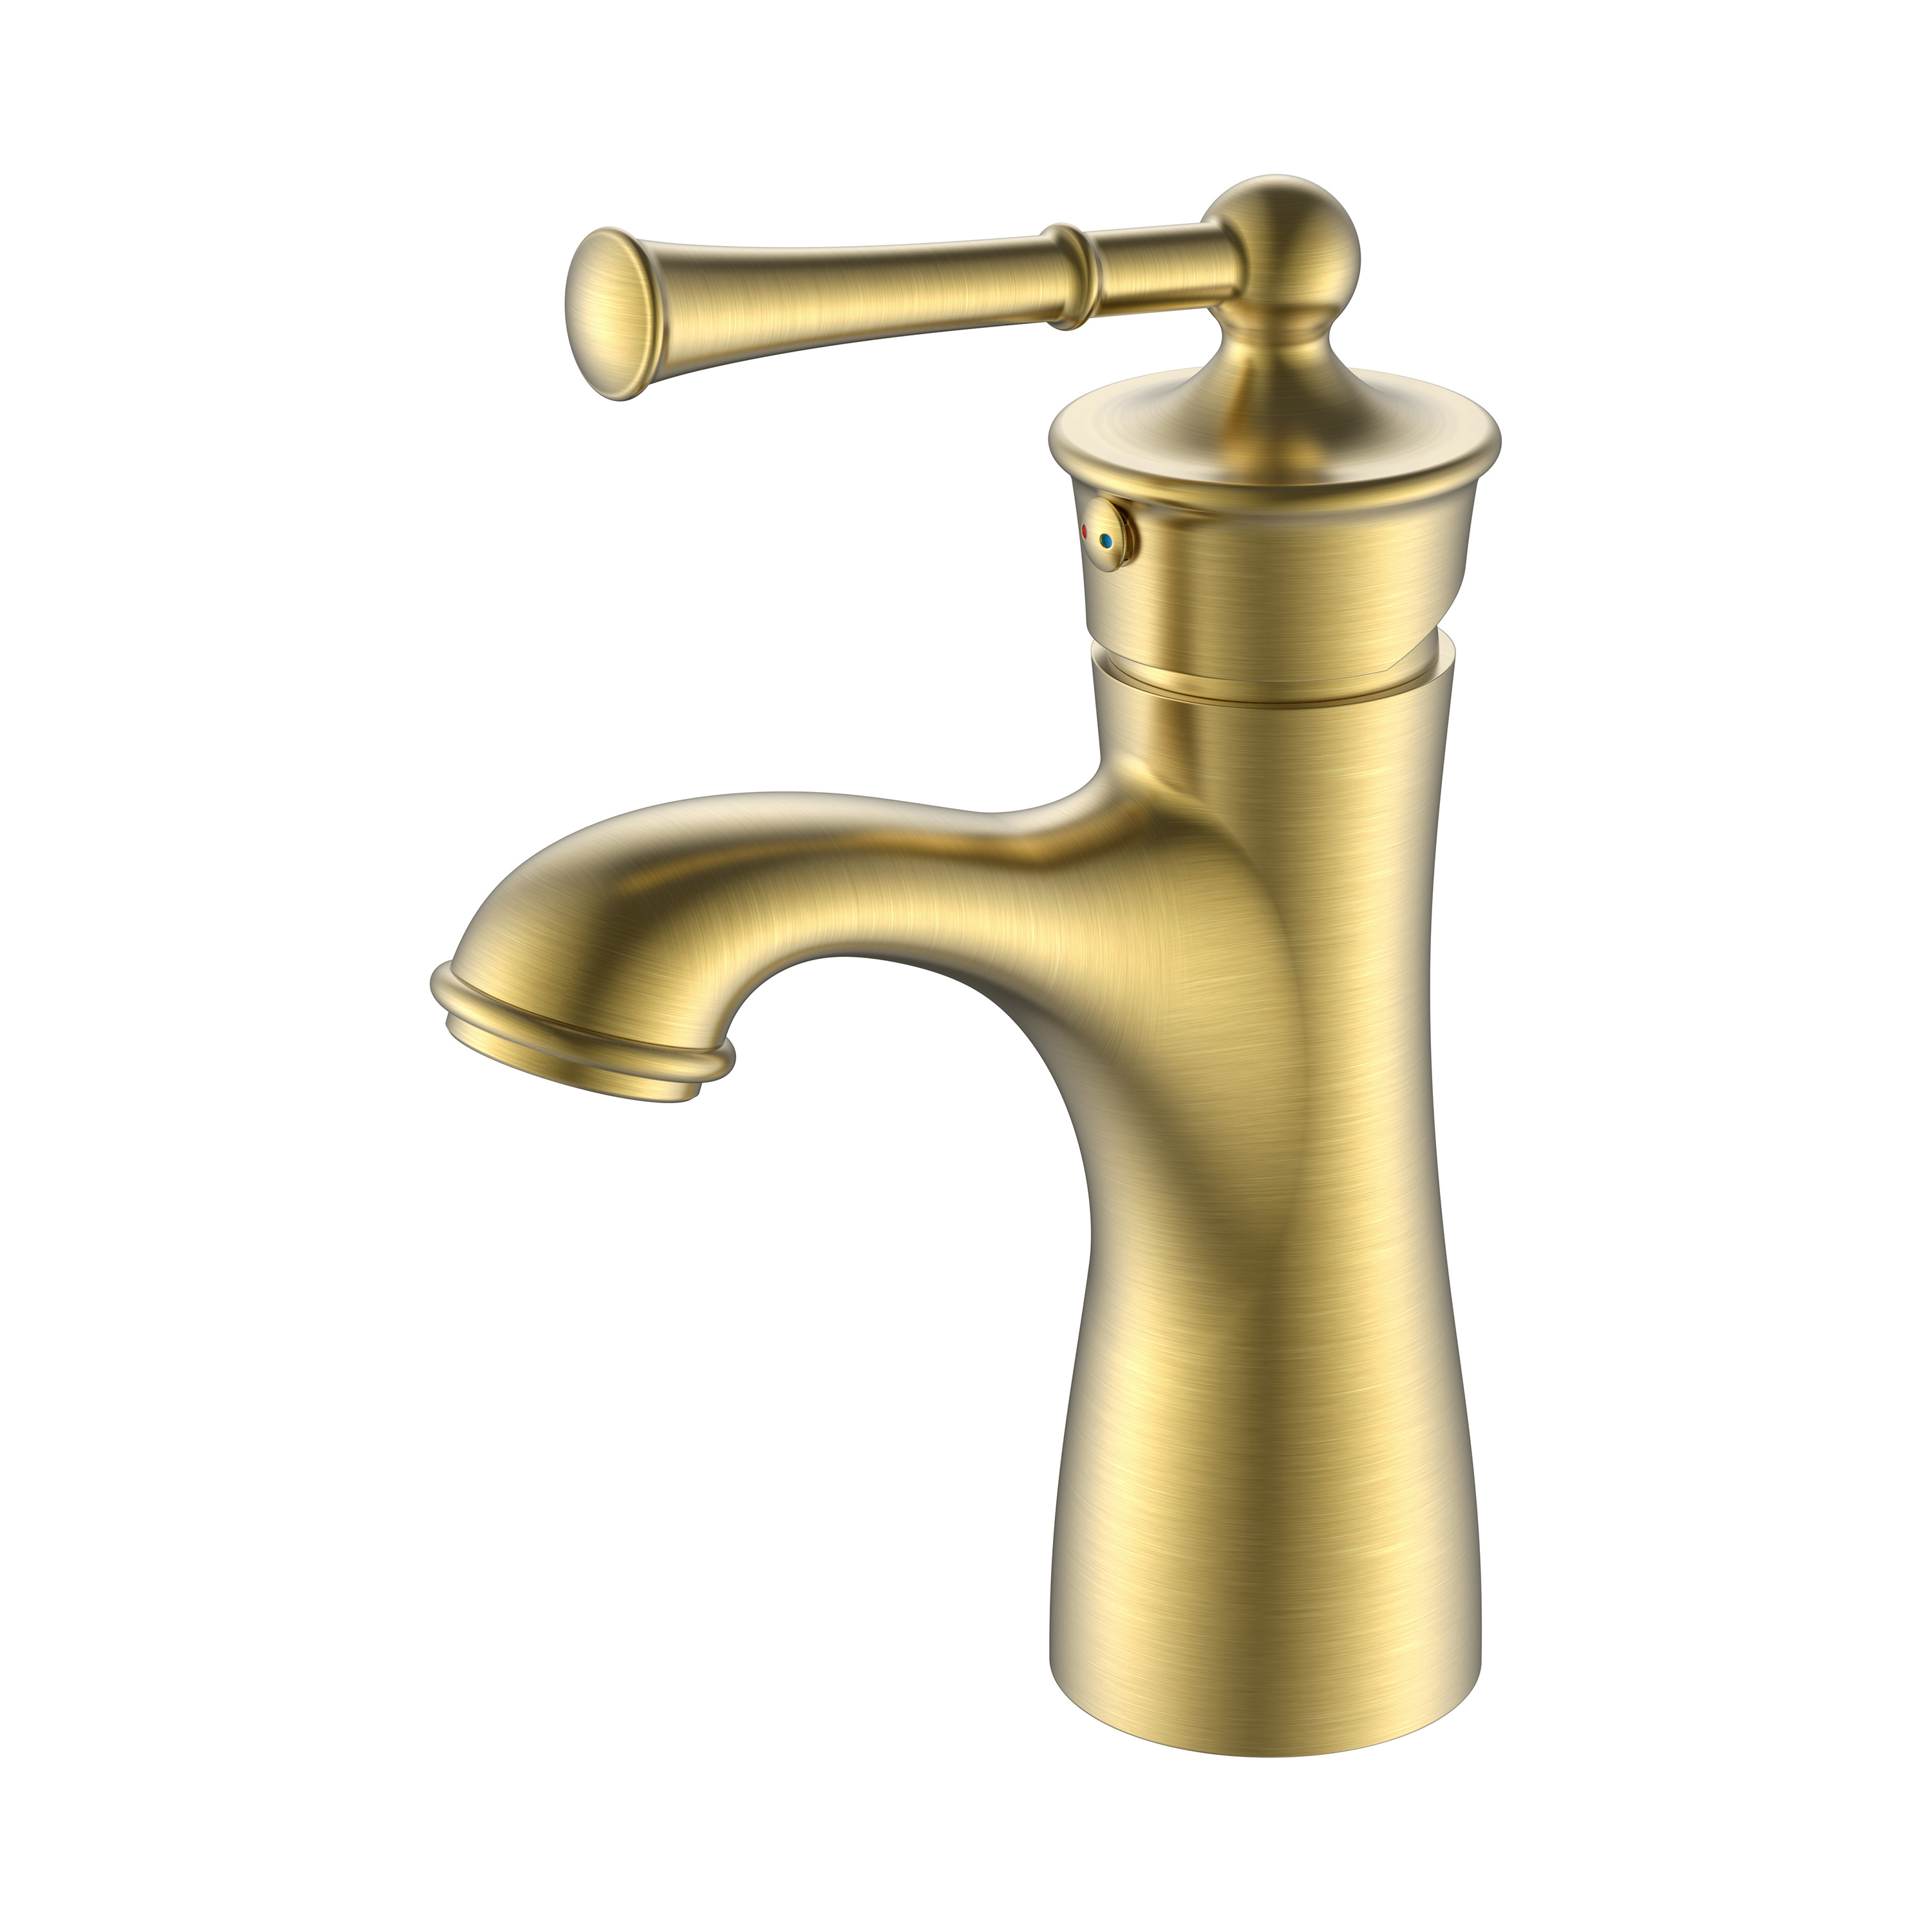 Смеситель для ванной комнаты из старинной латуни Золотой смеситель для раковины ванной комнаты Смесители для ванной комнаты с одним отверстием